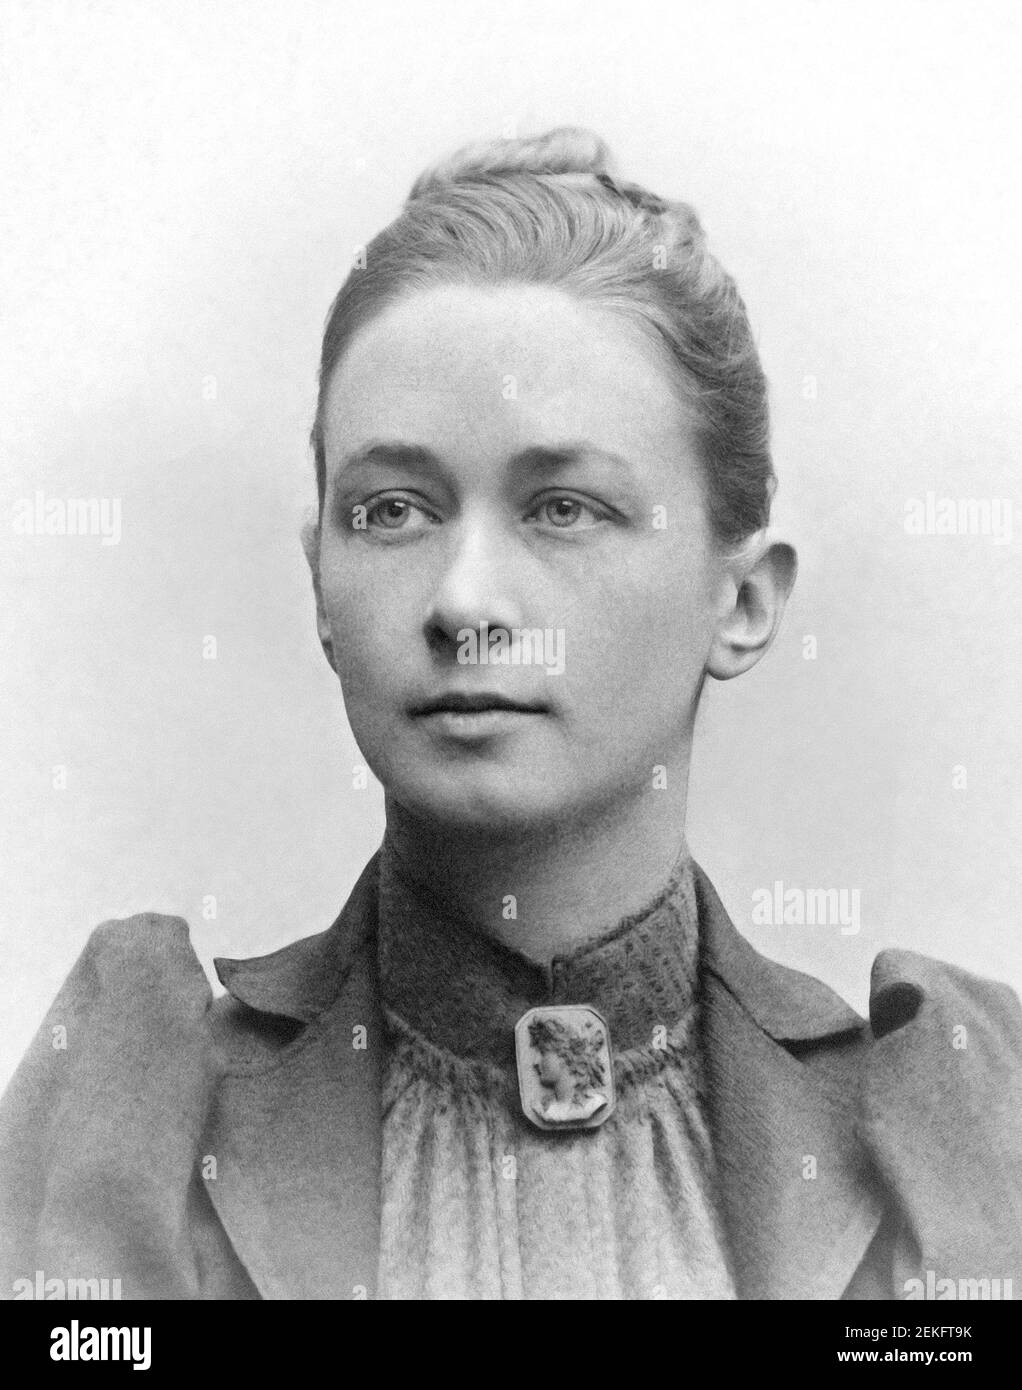 Hilma af Klint. Porträt der schwedischen Künstlerin und Mystikerin Hilma af Klint (1862-1944), c,1901 Stockfoto